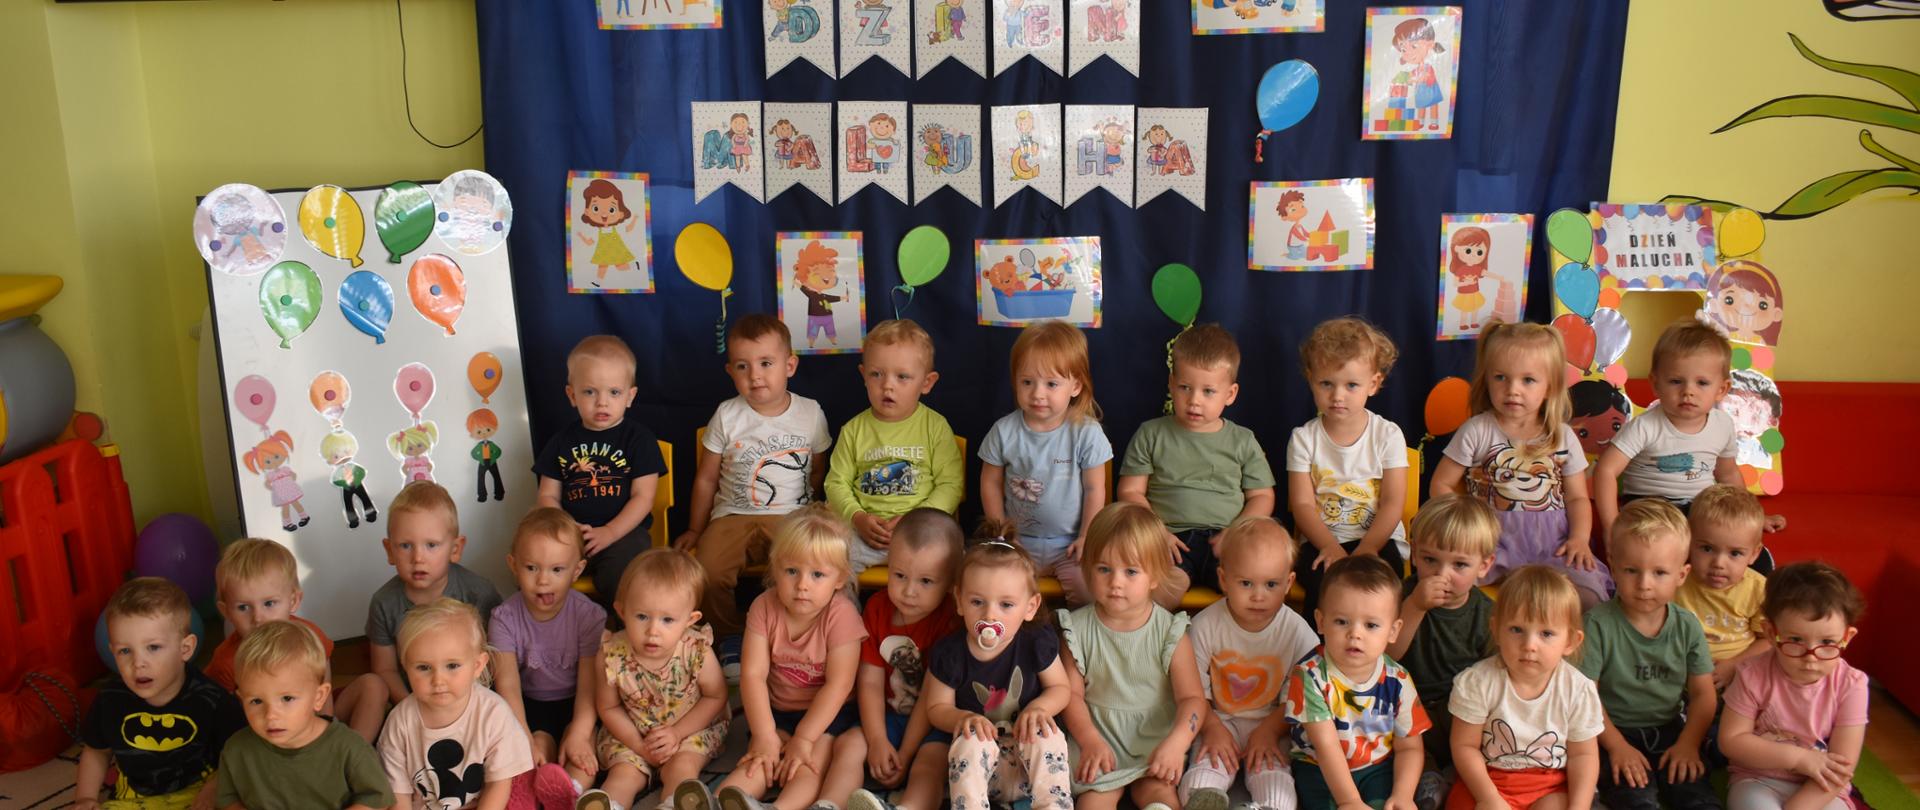 Na zdjęciu widać grupę 25 dzieci, siedzących w dwóch rzędach, a w tle jest niebieski materiał oraz dekoracje związane z dniem malucha.